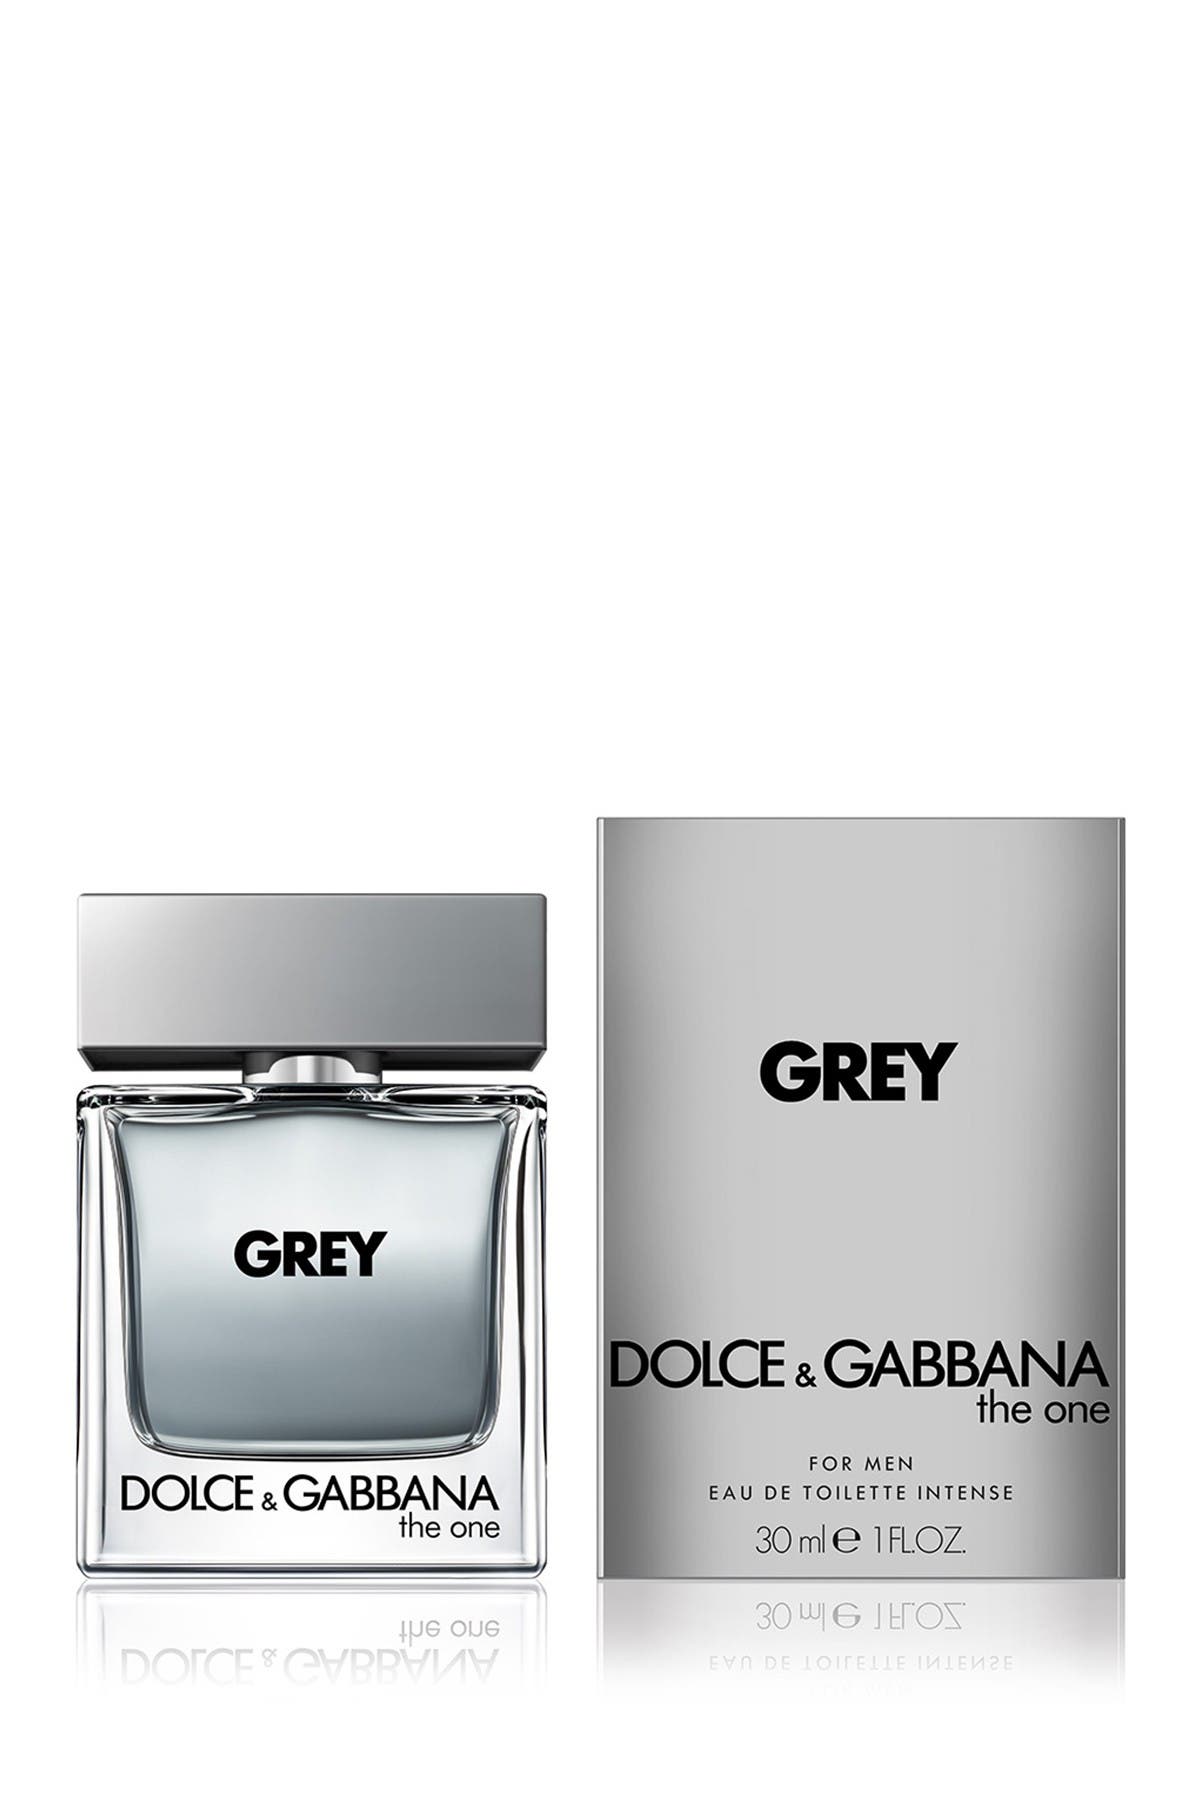 grey d&g